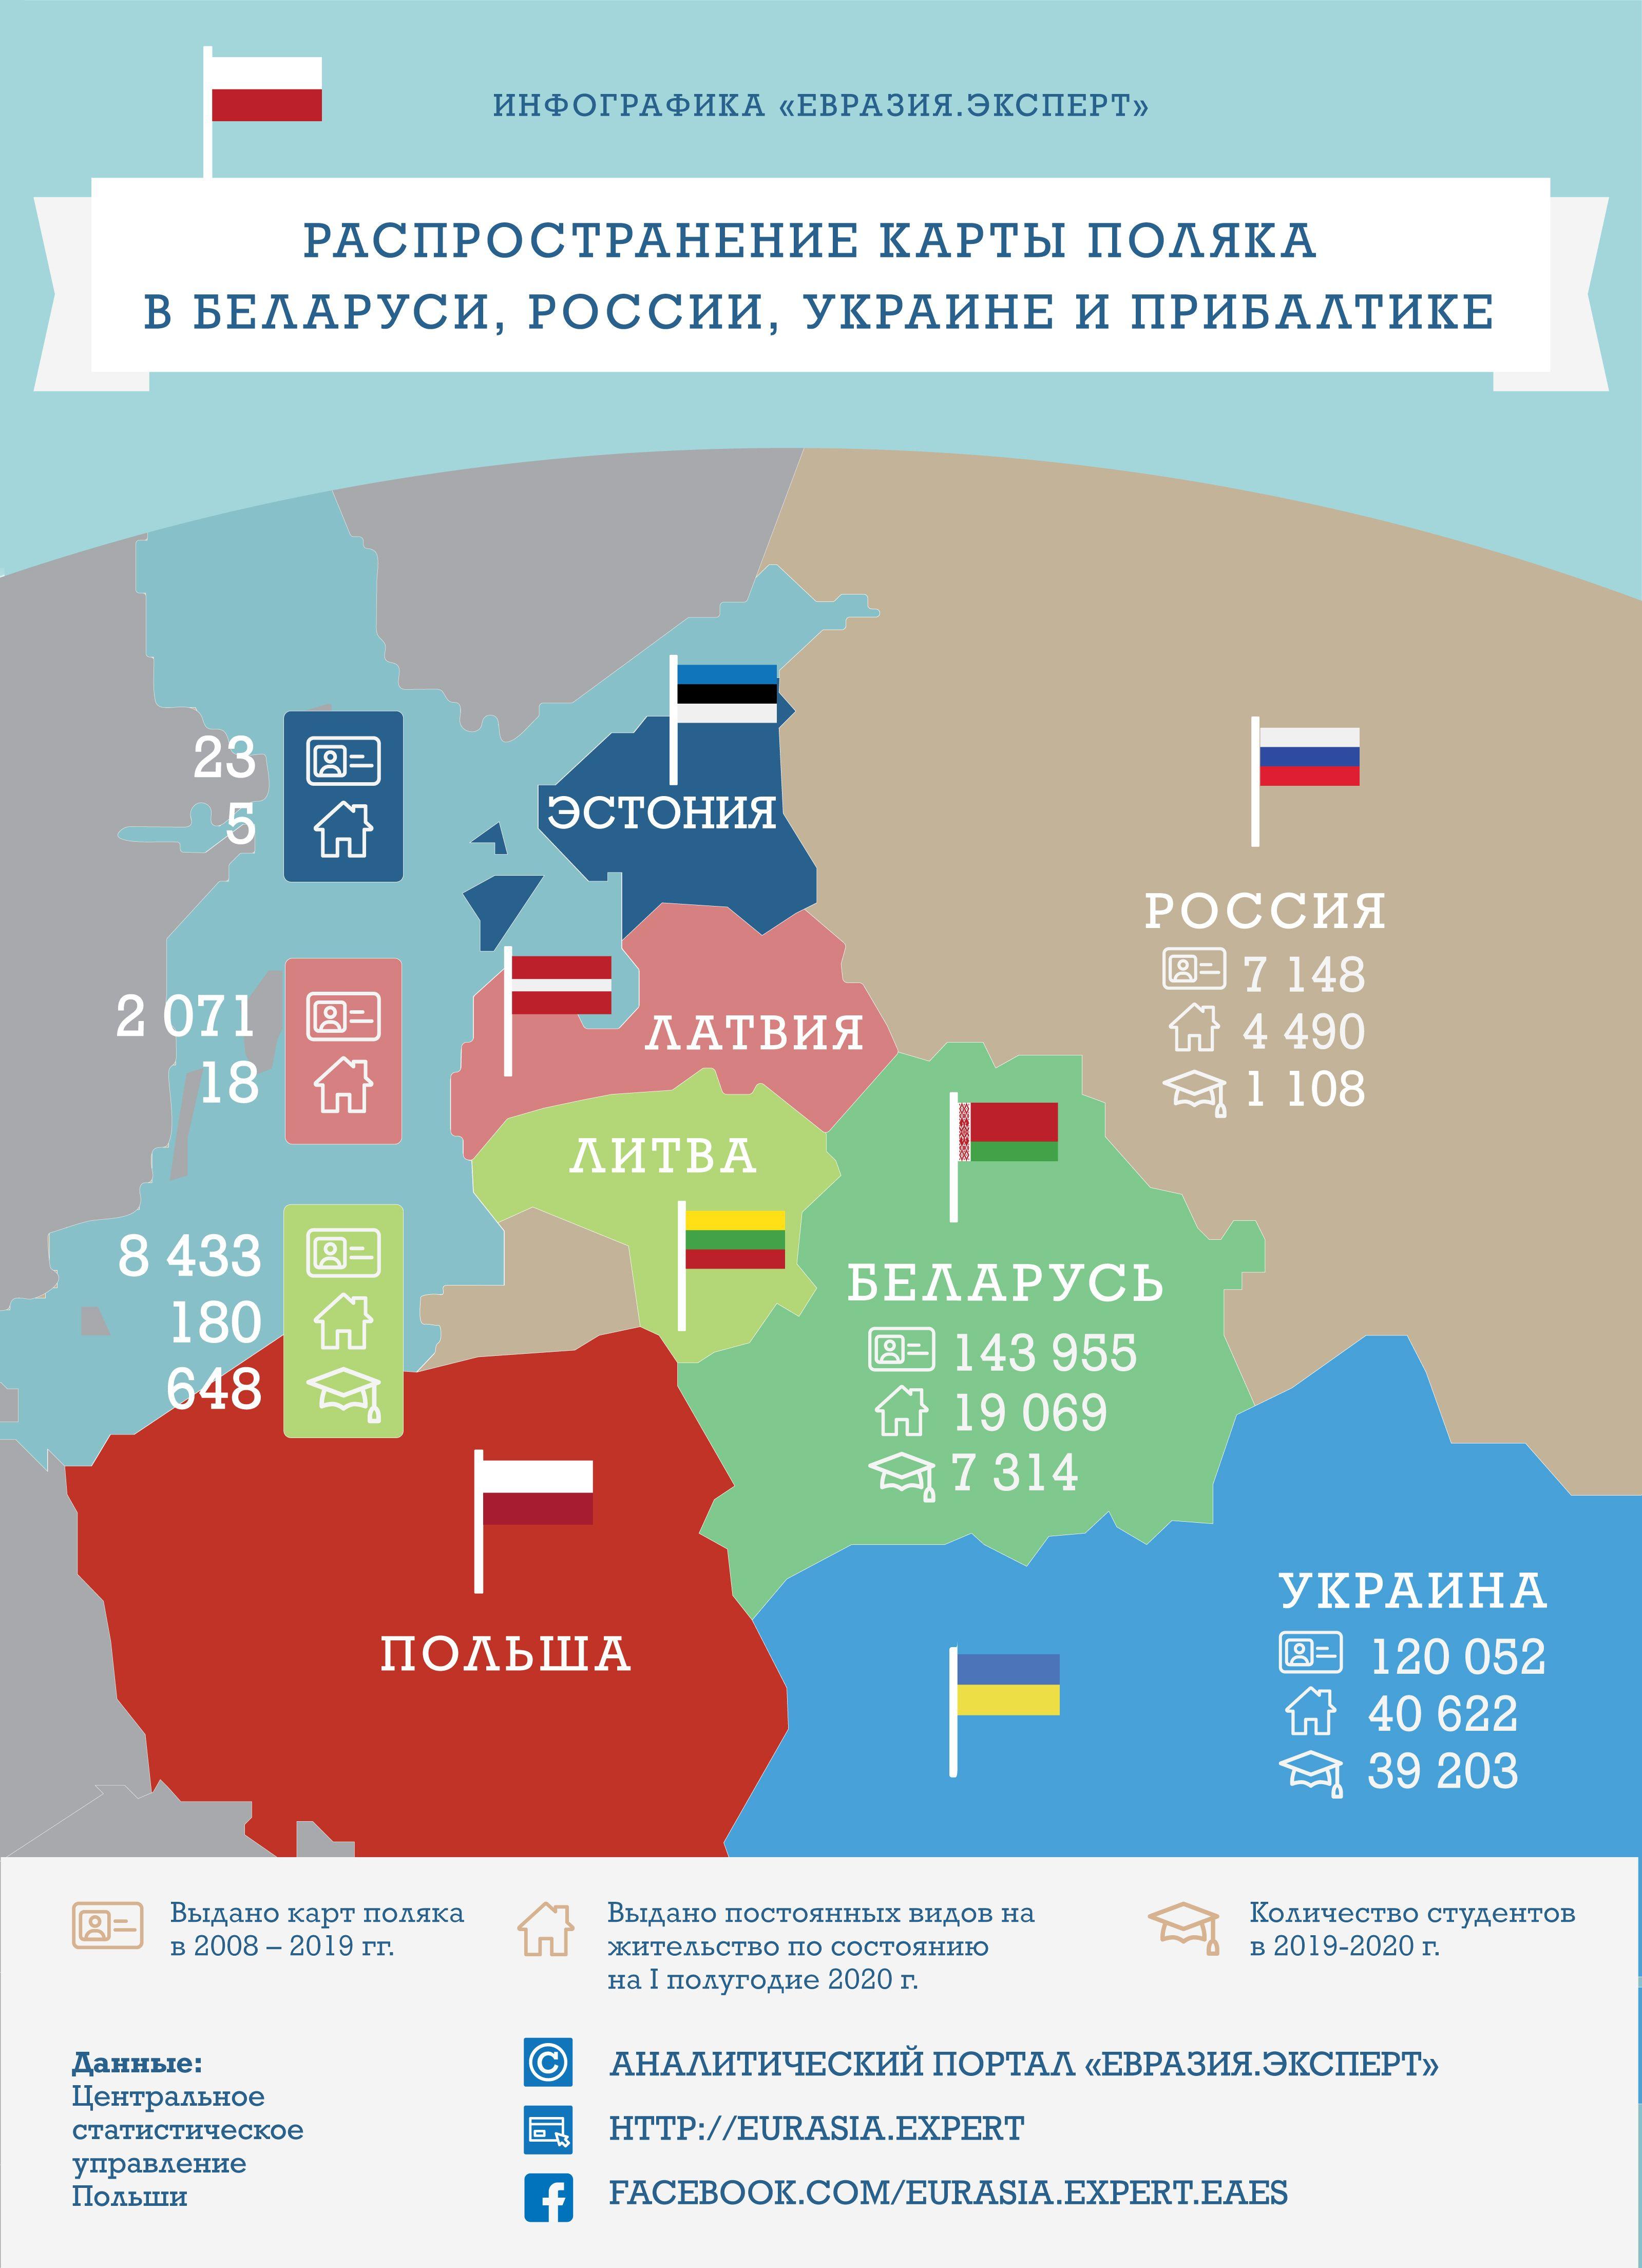 Инфографикa: Распространение карты поляка в Беларуси, России, Украине и Прибалтике